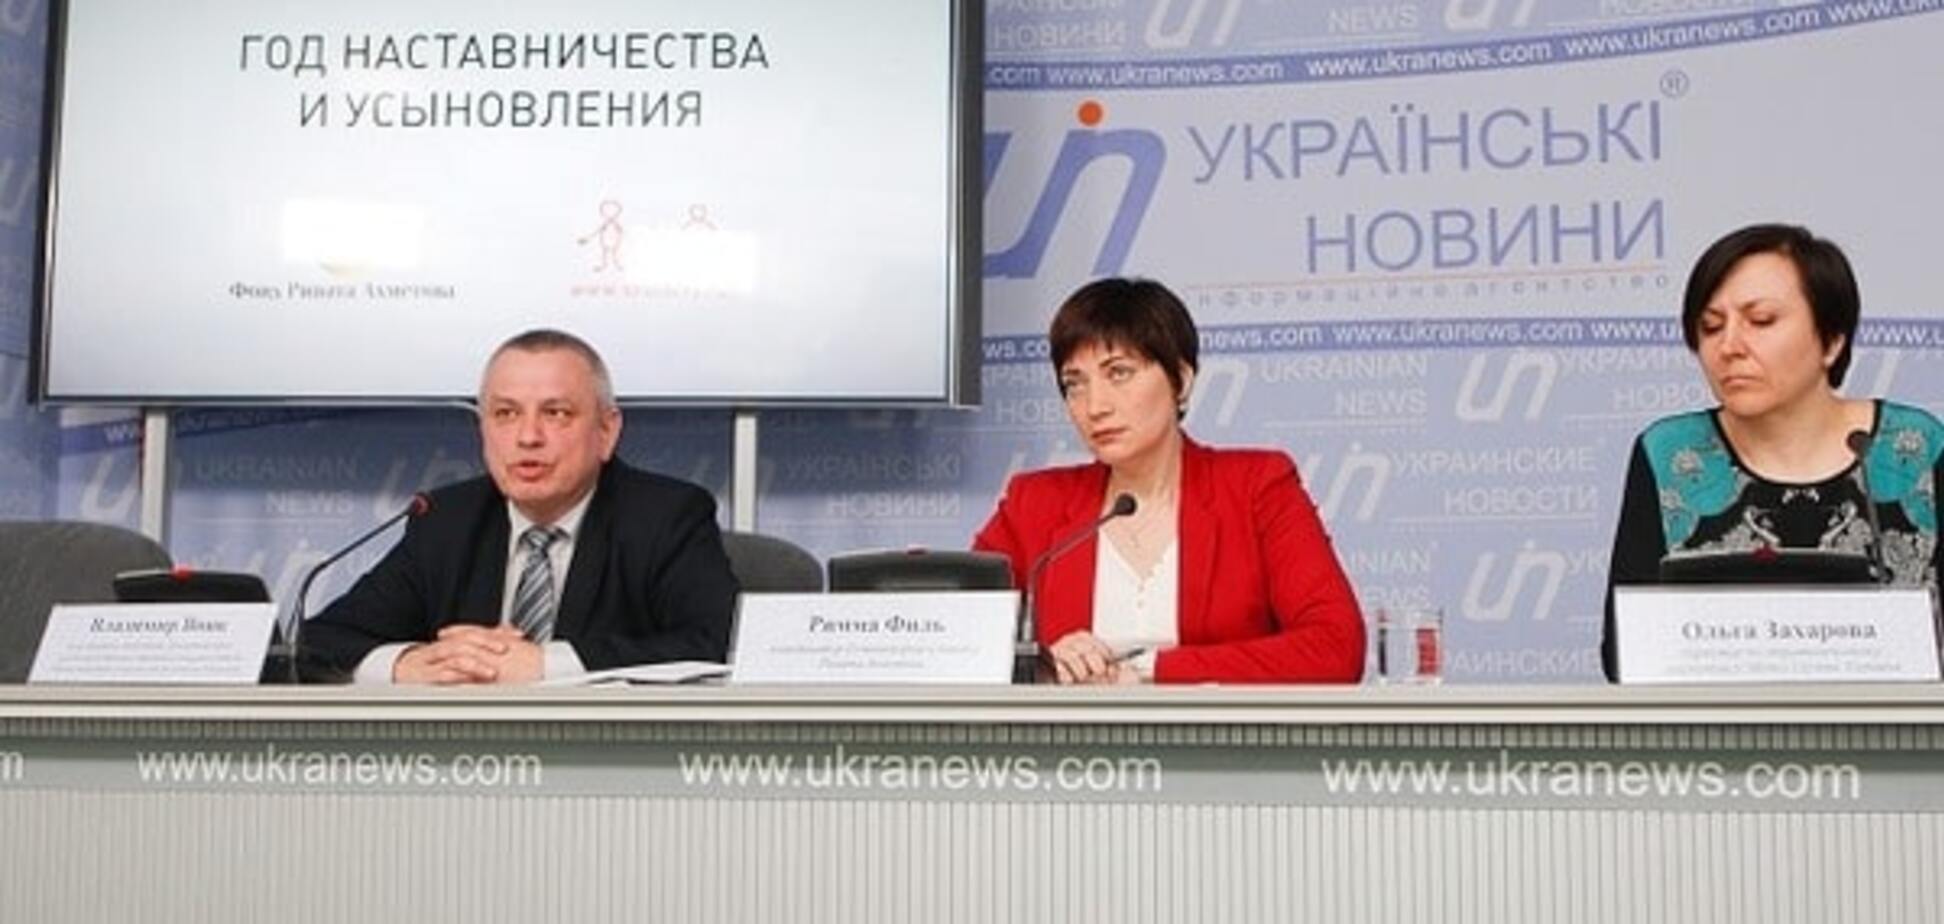 Фонд Ахметова объявил 'Год наставничества и усыновления'